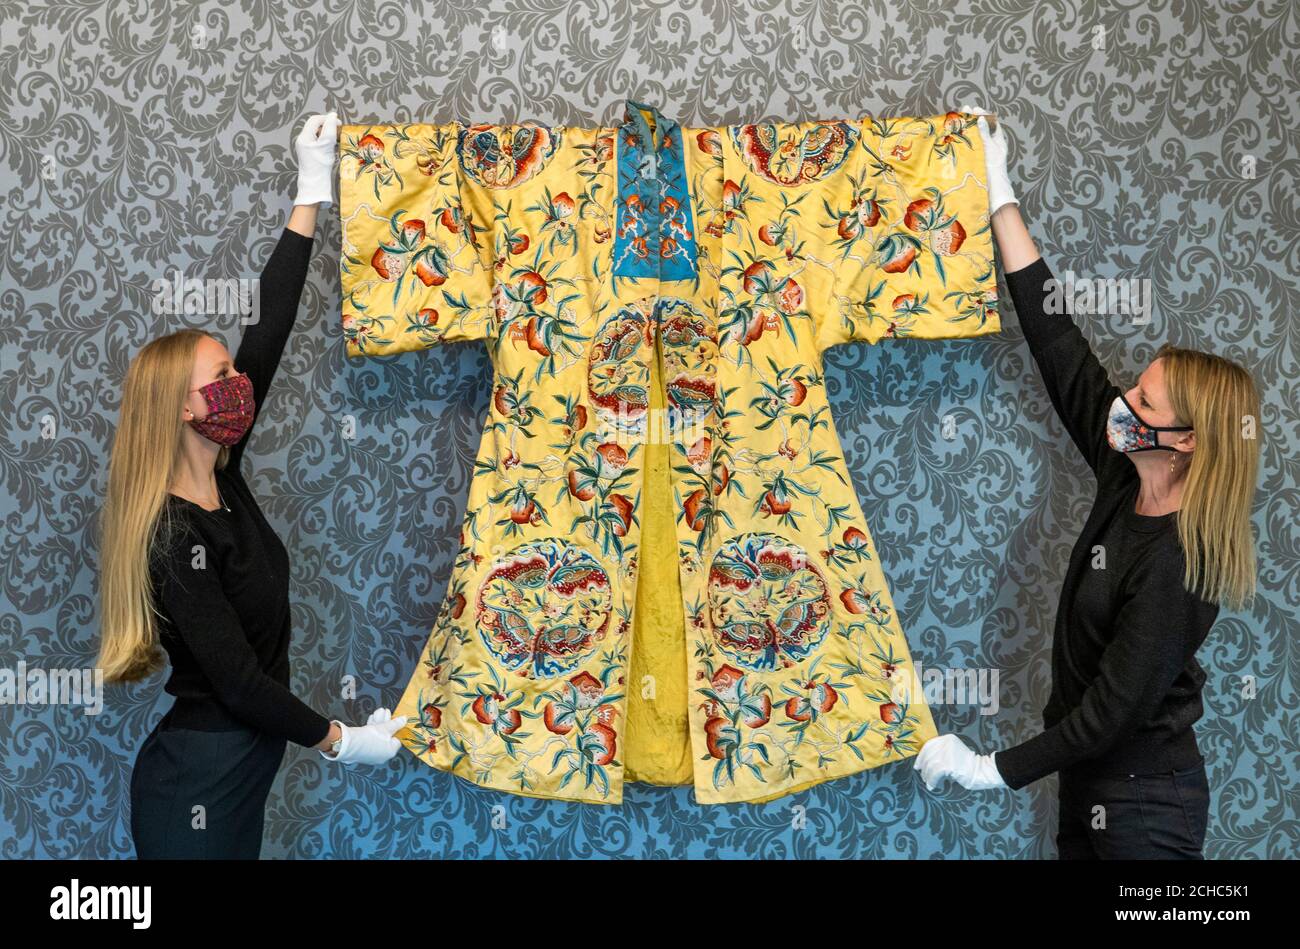 Romy Clark (à gauche) et May Matthews, de Bonhams Edinburgh, présentent une robe de soie chinoise brodée Qing Dynasty (estimation de 800 à 1,200 £) lors d'un appel photo pour la prochaine vente de Home and Interiors, et la vente de sports et de faune, à Bonhams, Édimbourg, le 23 septembre 2020. Banque D'Images